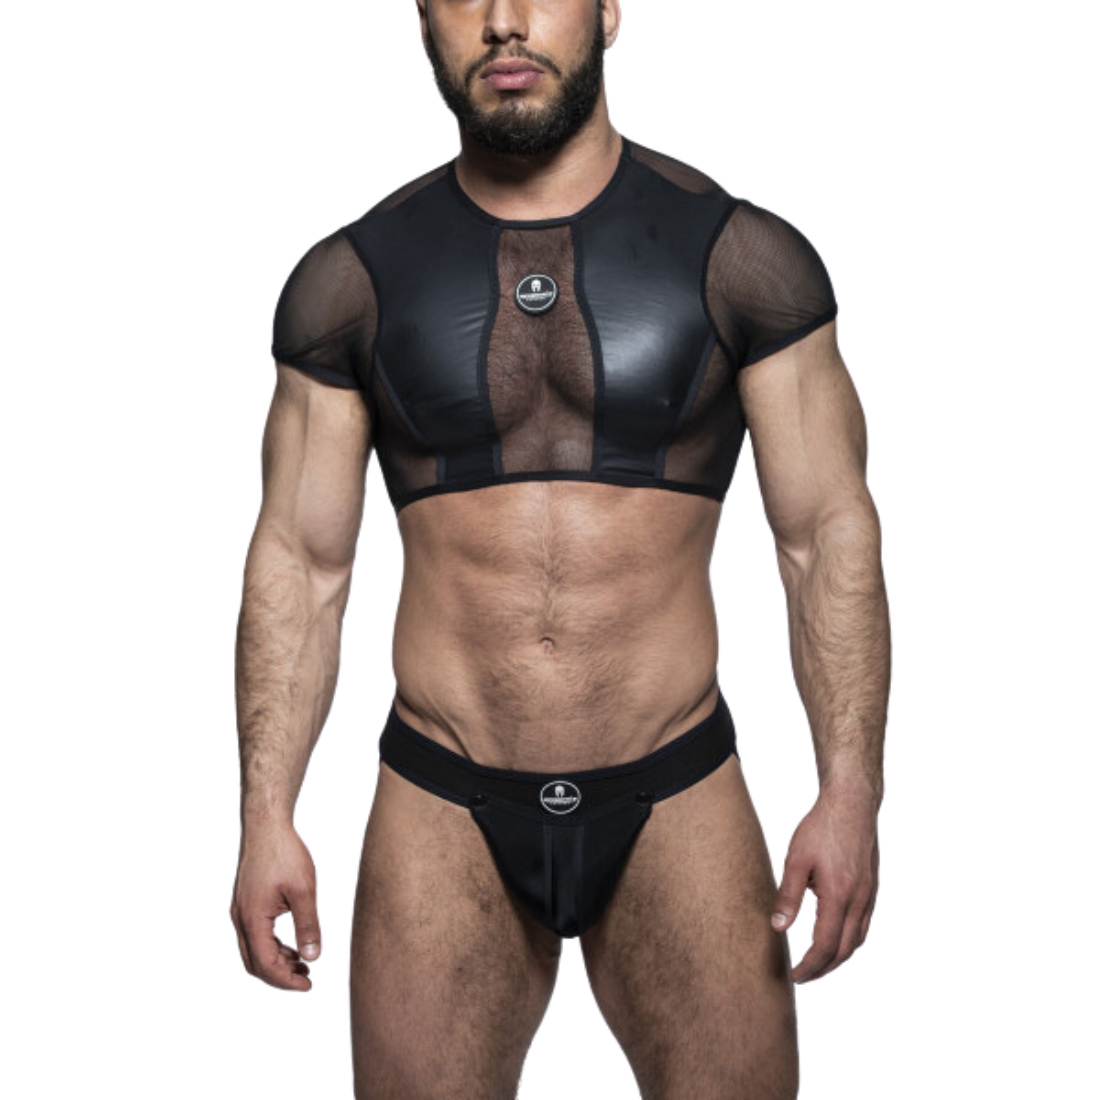 Zwarte crop top met zwarte meshstof, gemaakt door het fabuleuze Italiaanse merk Sparta’s Harness. Perfect voor gay mannen en te koop bij Flavourez.